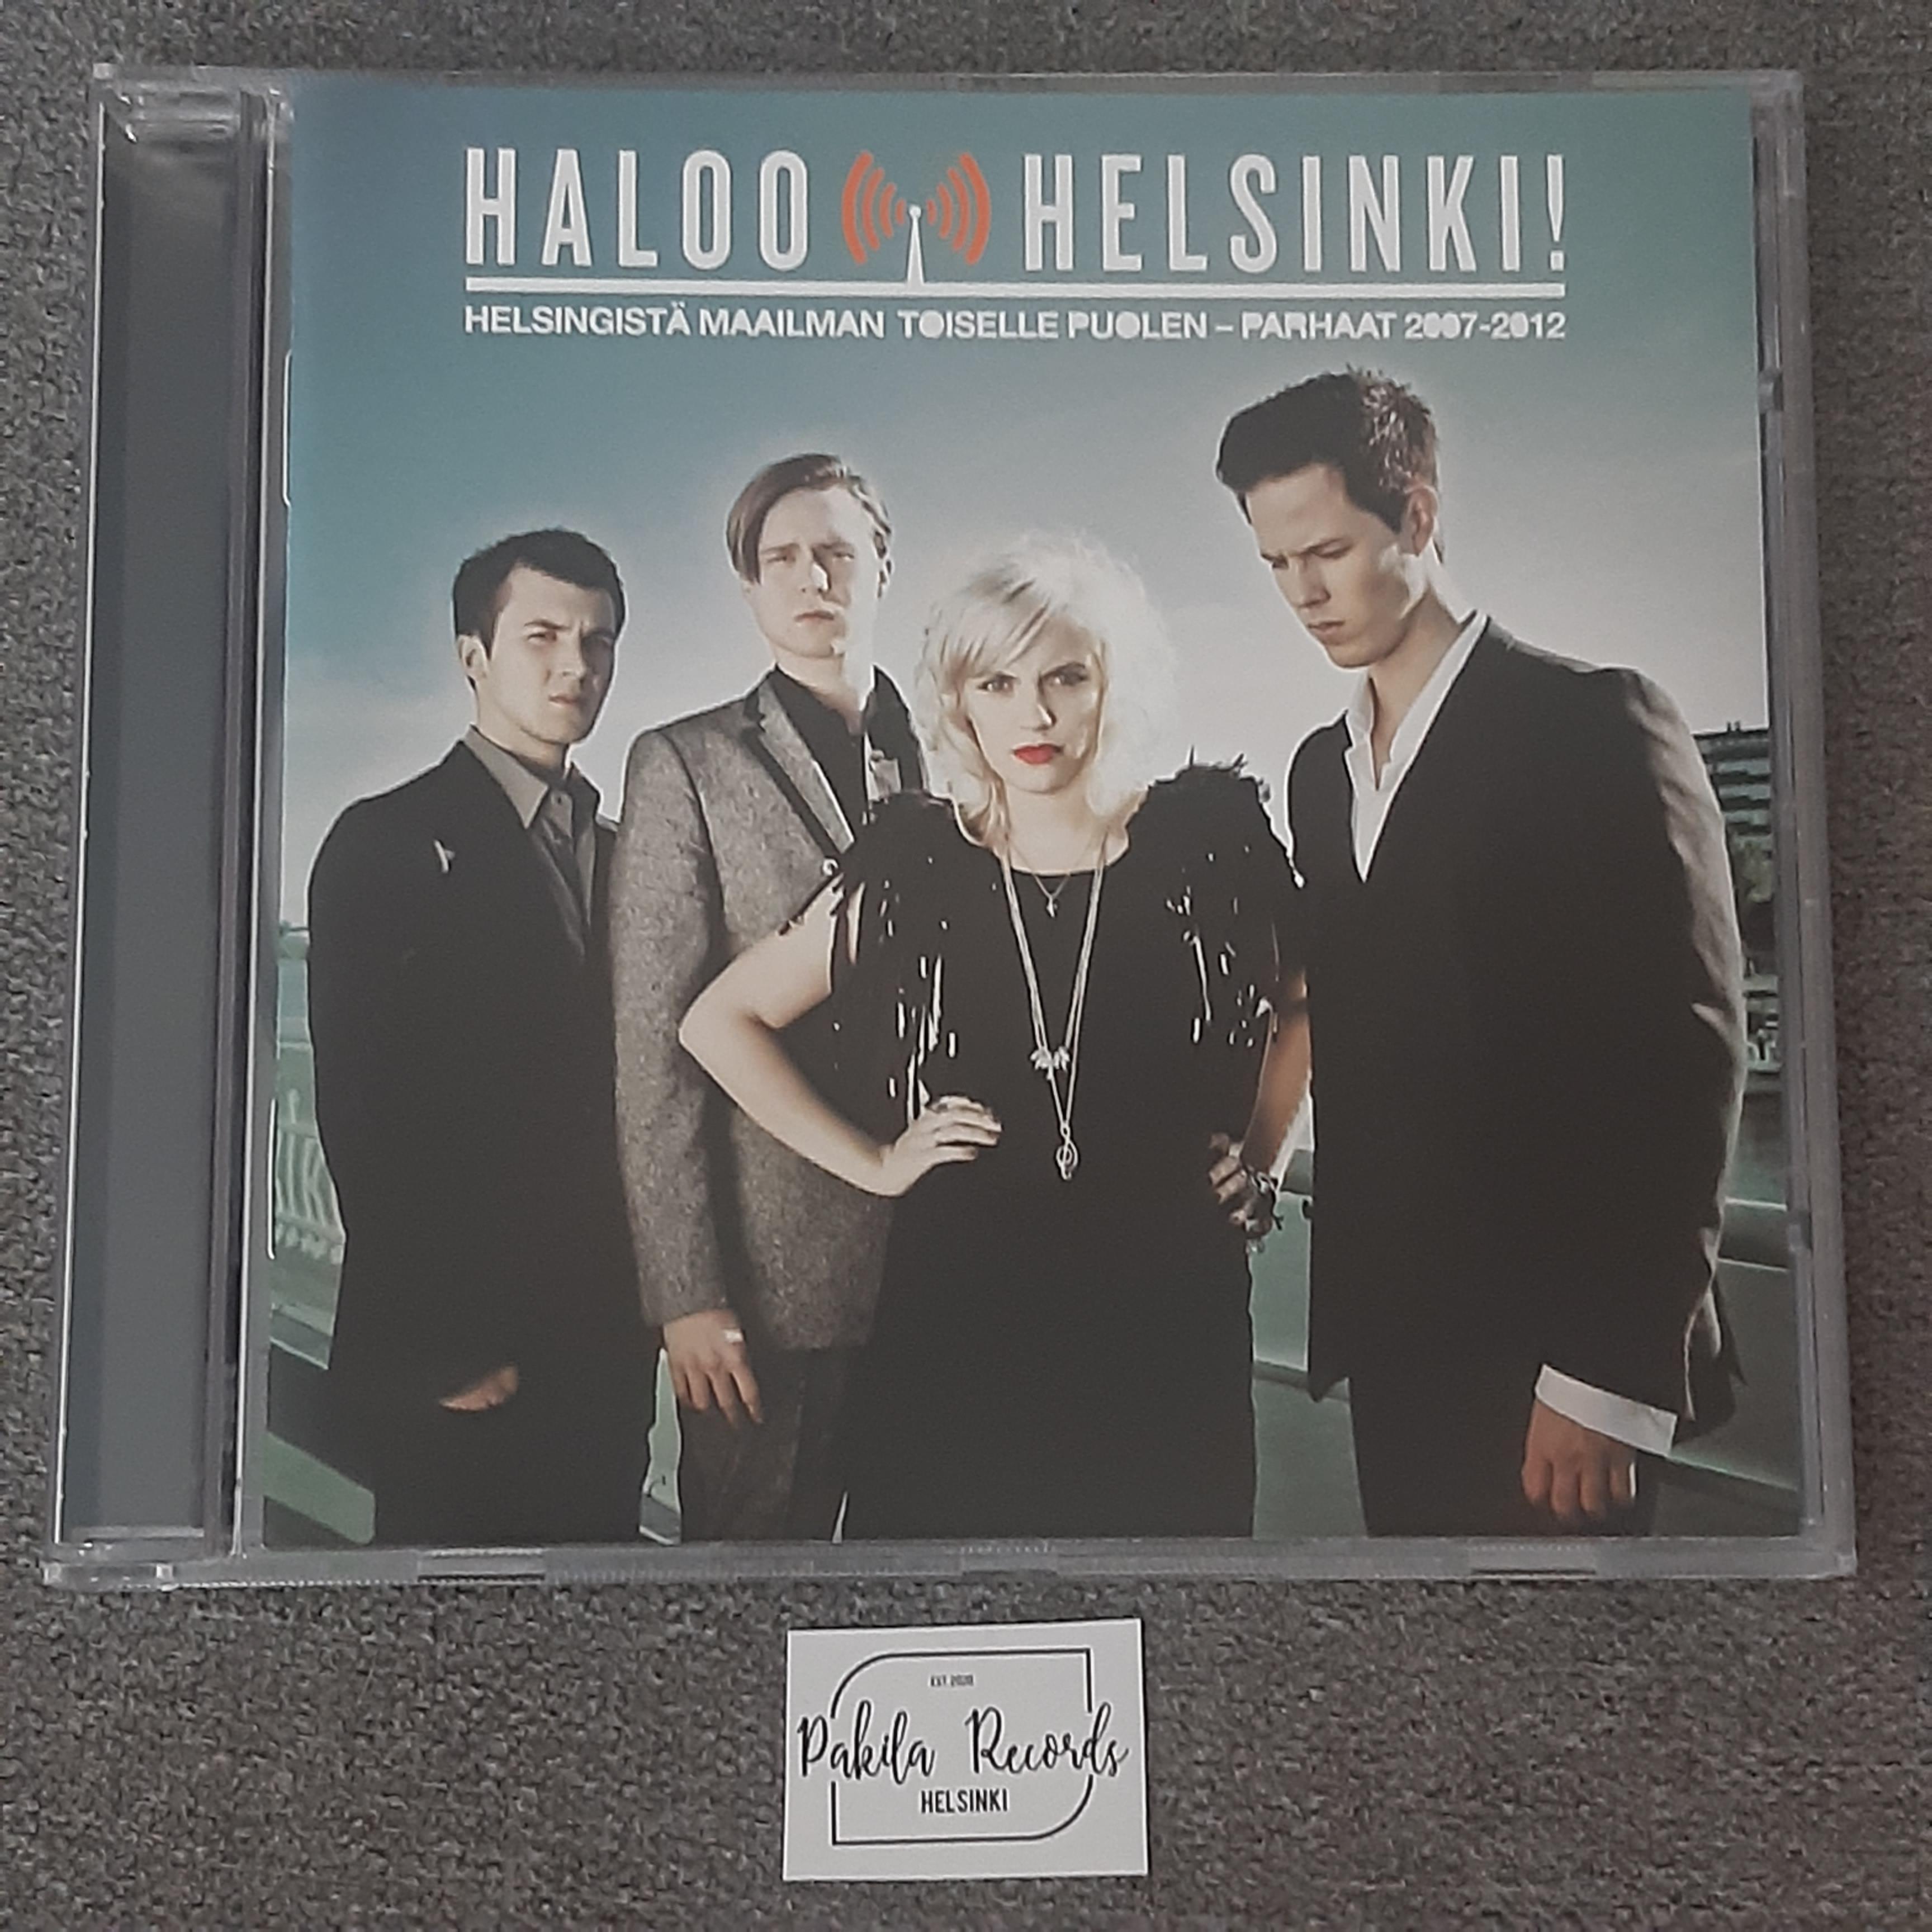 Haloo Helsinki - Helsingistä maailman toiselle puolelle, Parhaat 2007-2012 - CD (käytetty)